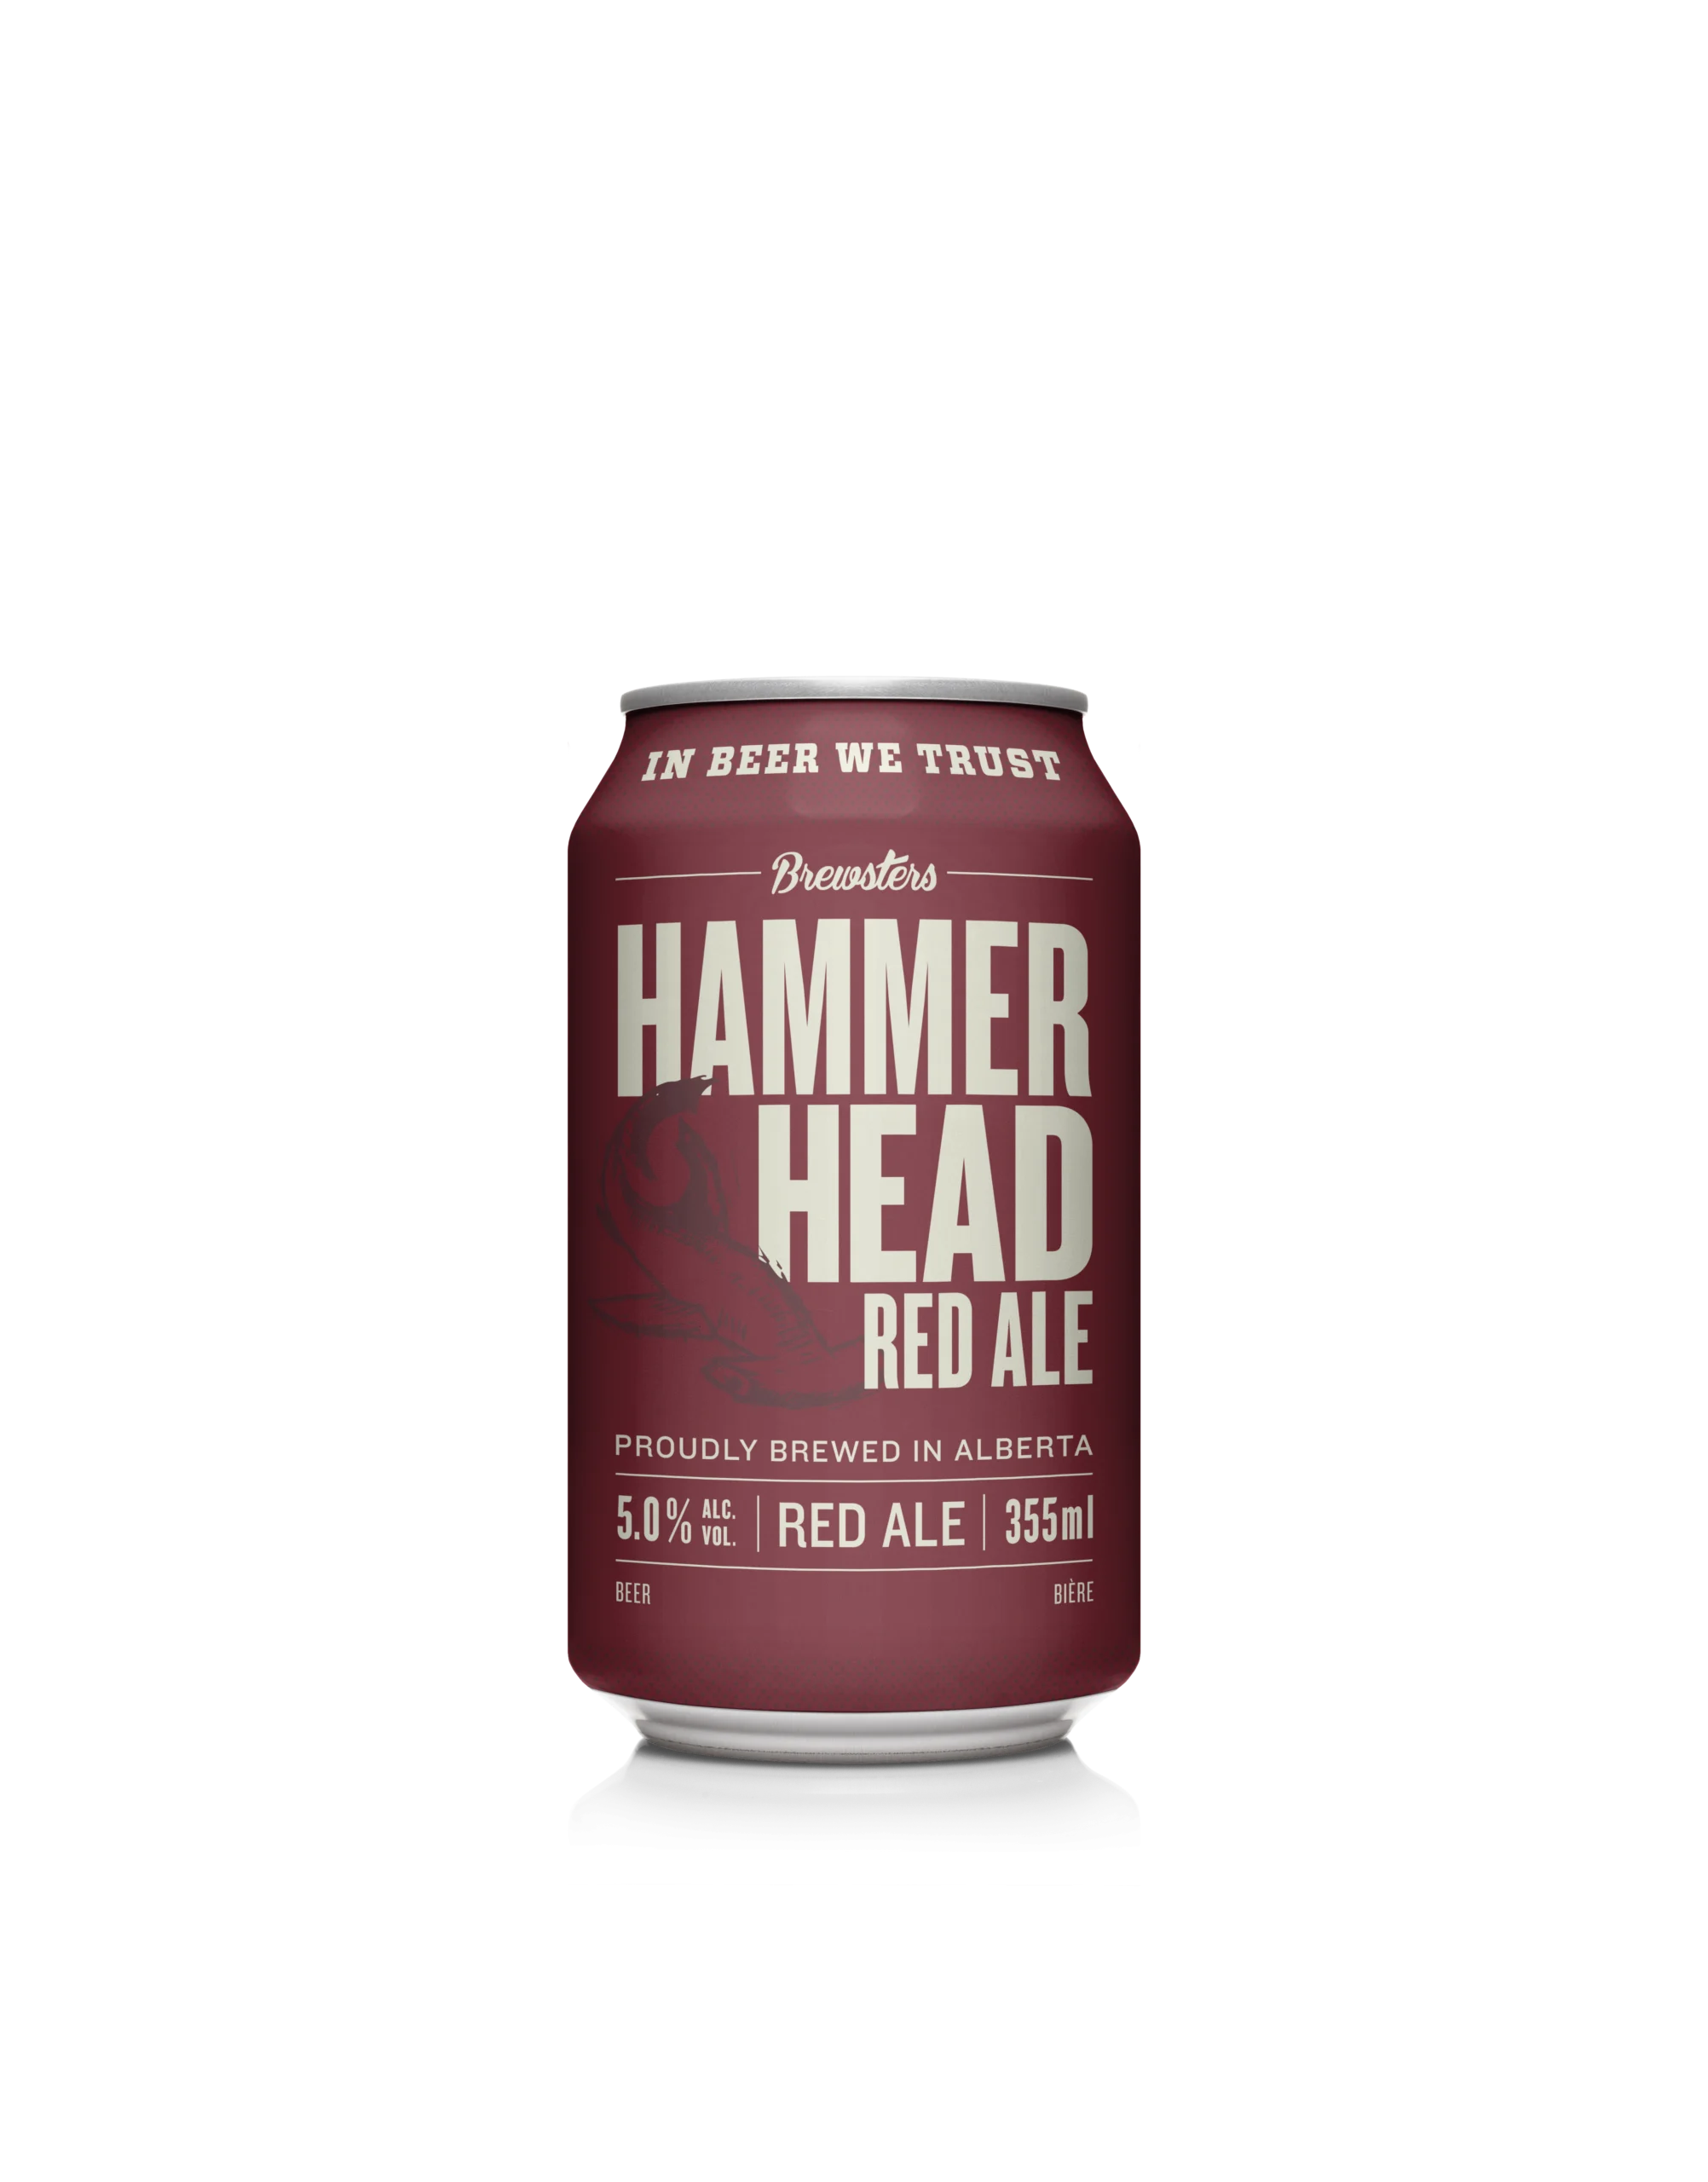 Red ale beer can render